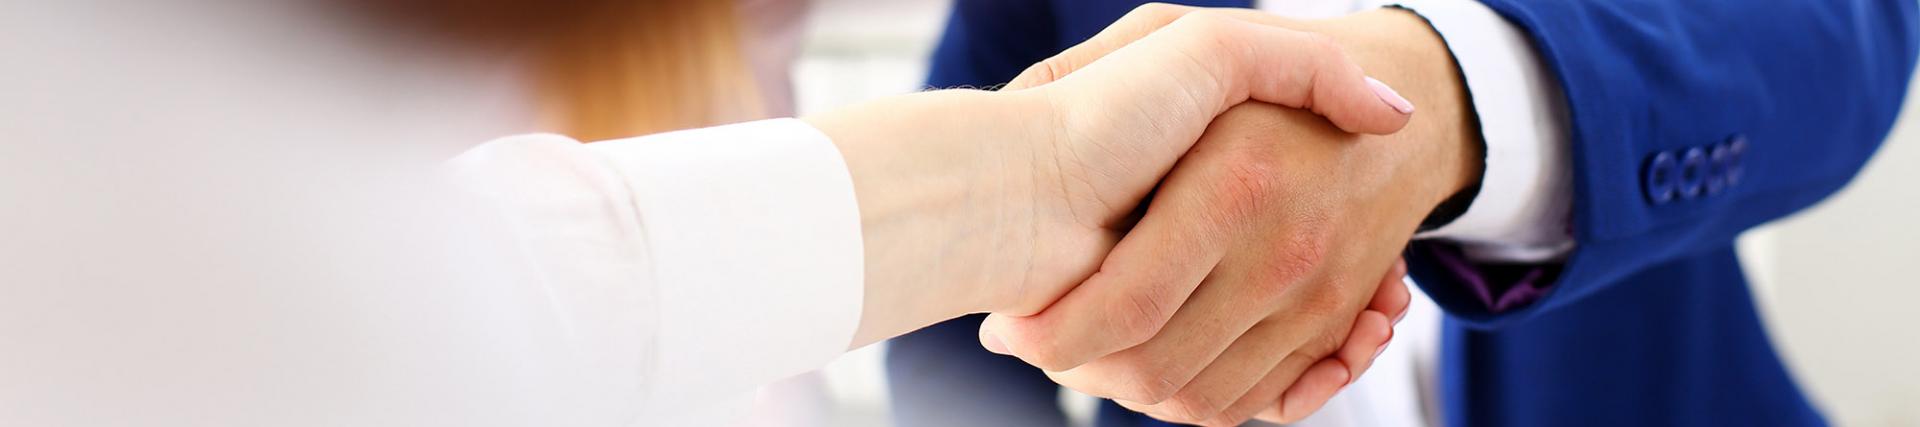 Two handshaking businesspeople